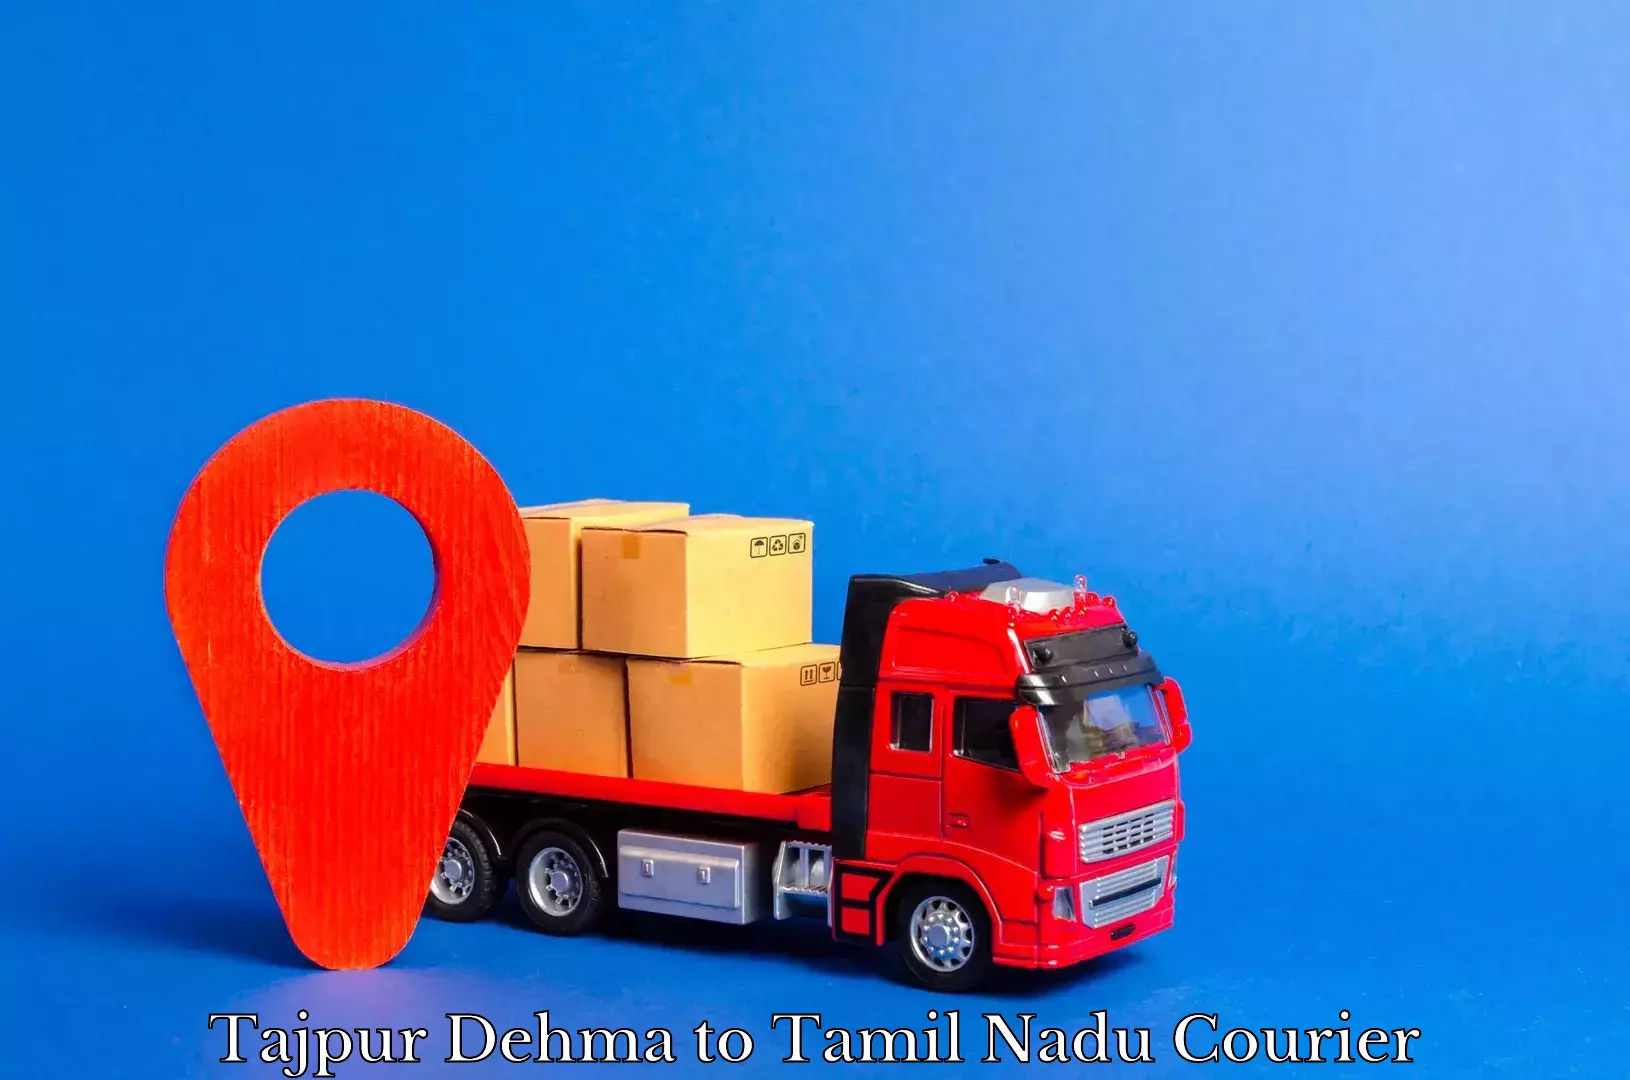 Courier service innovation Tajpur Dehma to Tamil Nadu